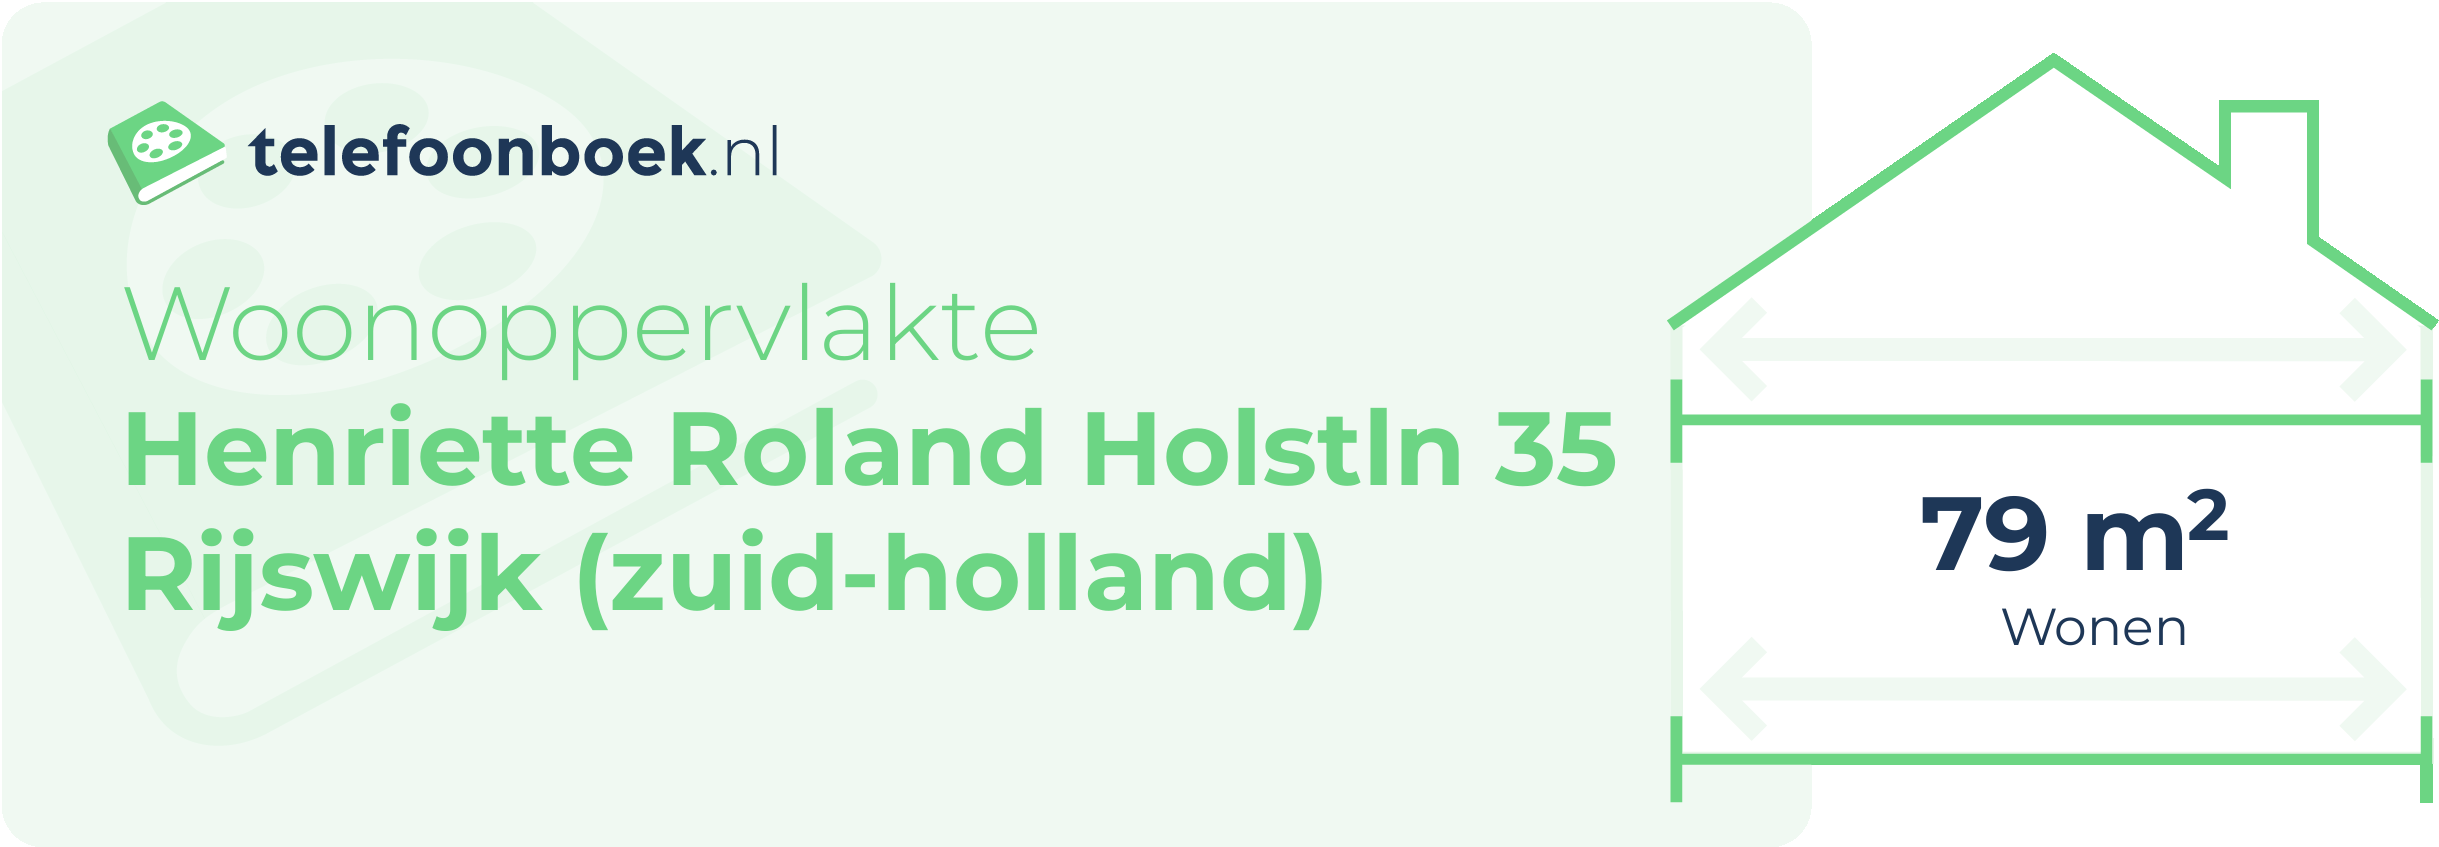 Woonoppervlakte Henriette Roland Holstln 35 Rijswijk (Zuid-Holland)